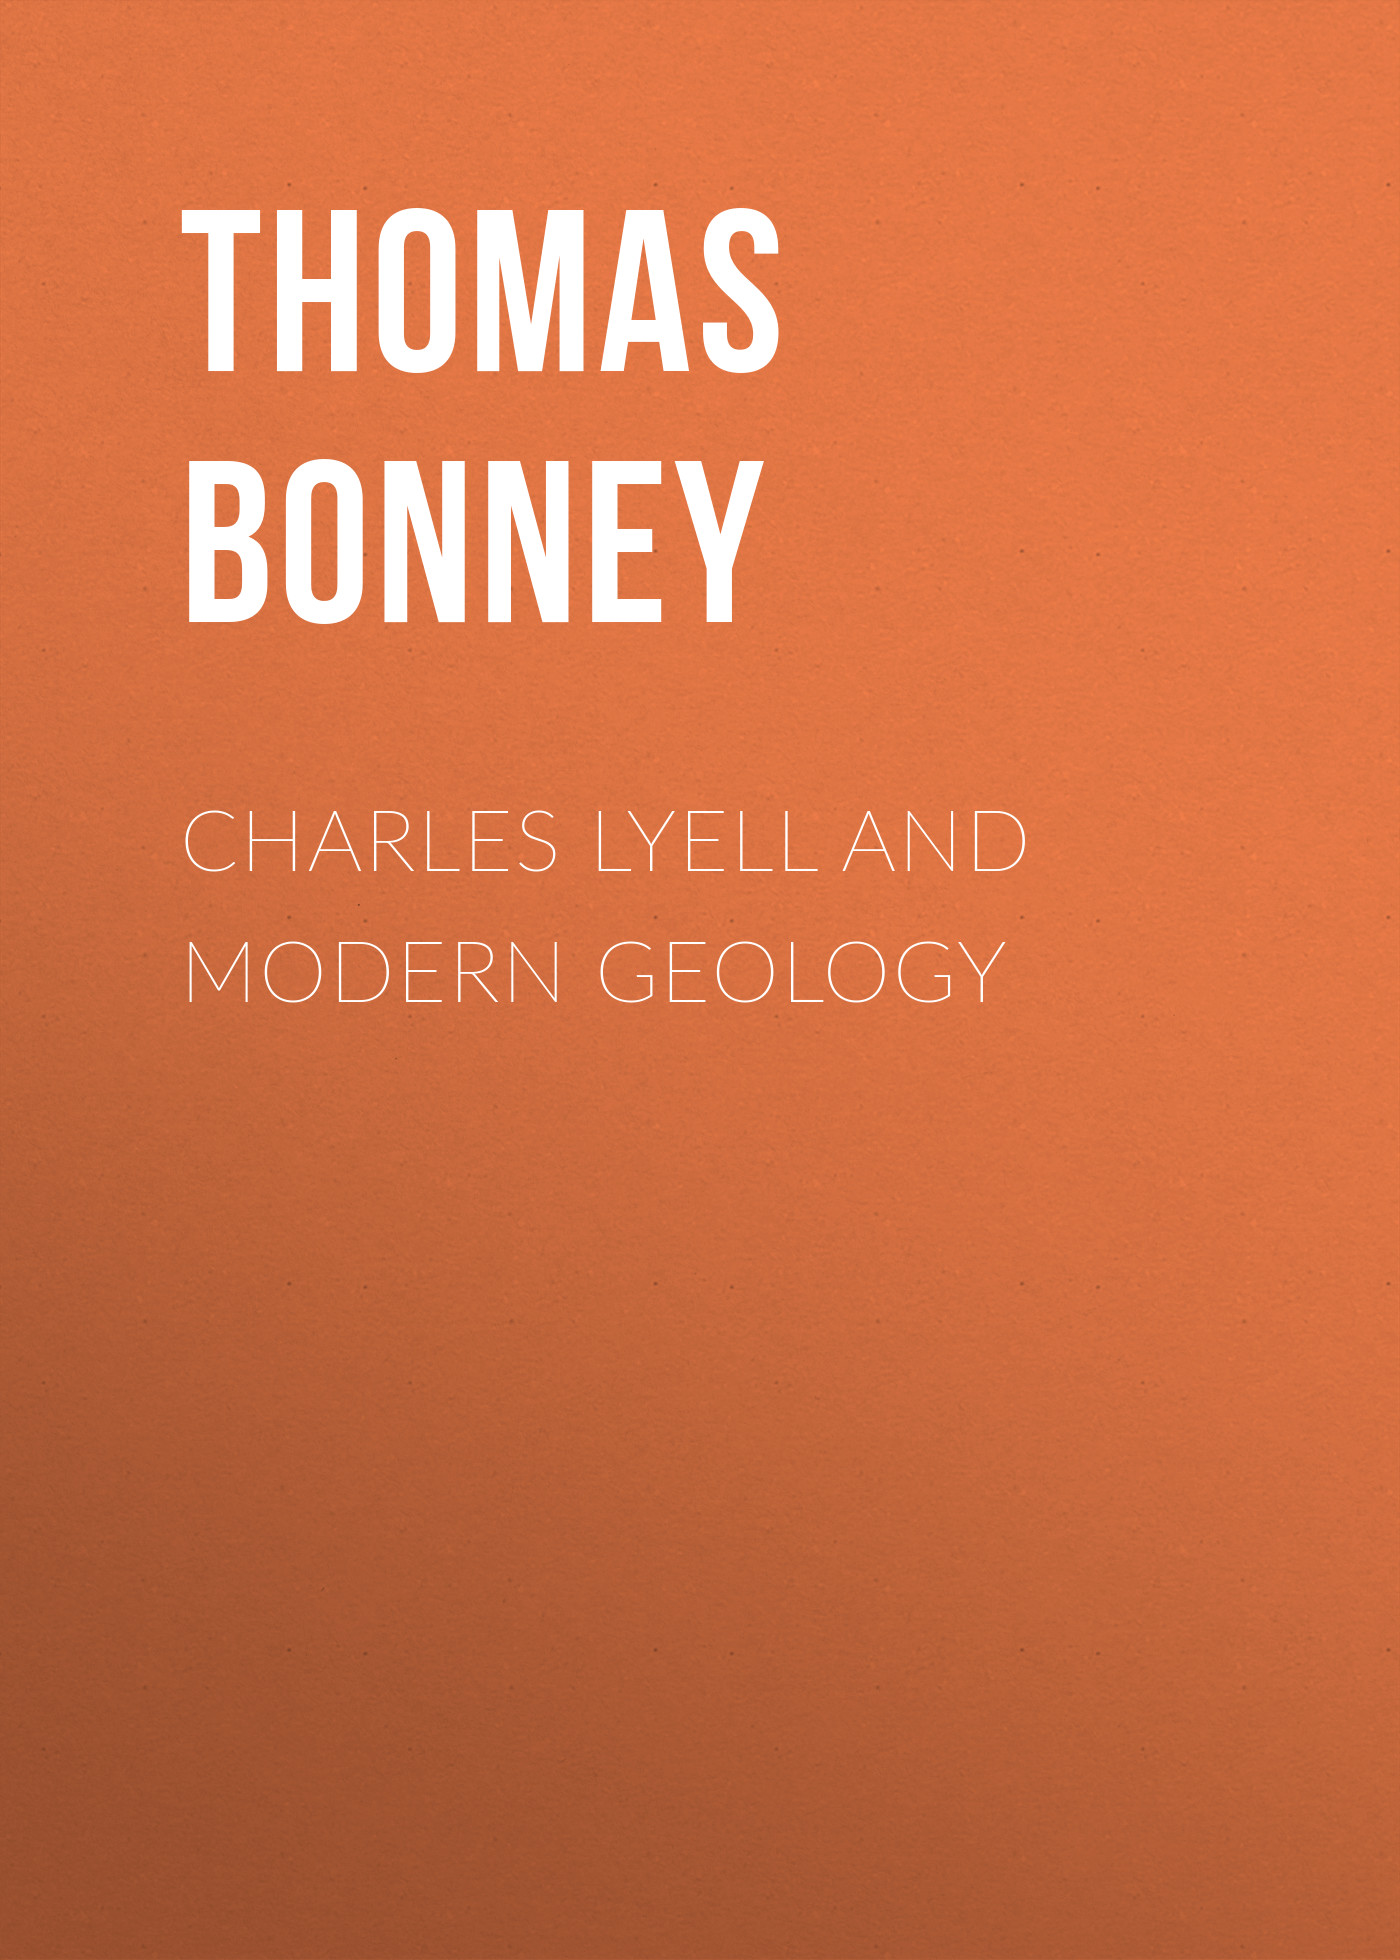 Книга Charles Lyell and Modern Geology из серии , созданная Thomas Bonney, может относится к жанру Зарубежная старинная литература, Зарубежная классика. Стоимость электронной книги Charles Lyell and Modern Geology с идентификатором 24169244 составляет 0.90 руб.